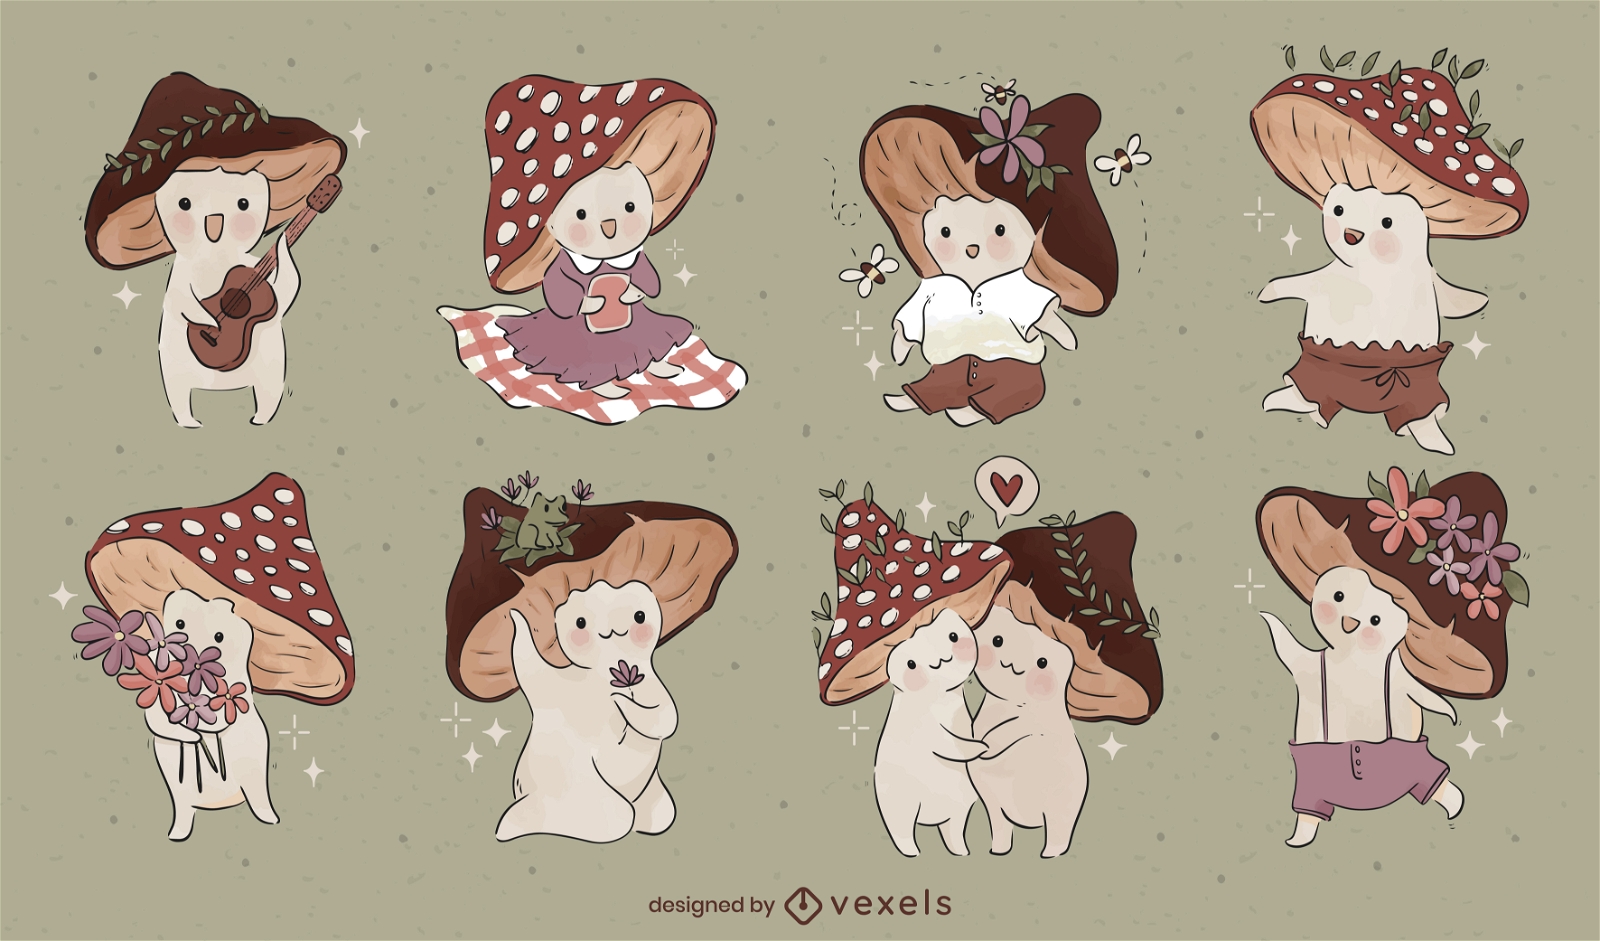 Cute fairy mushrooms character set